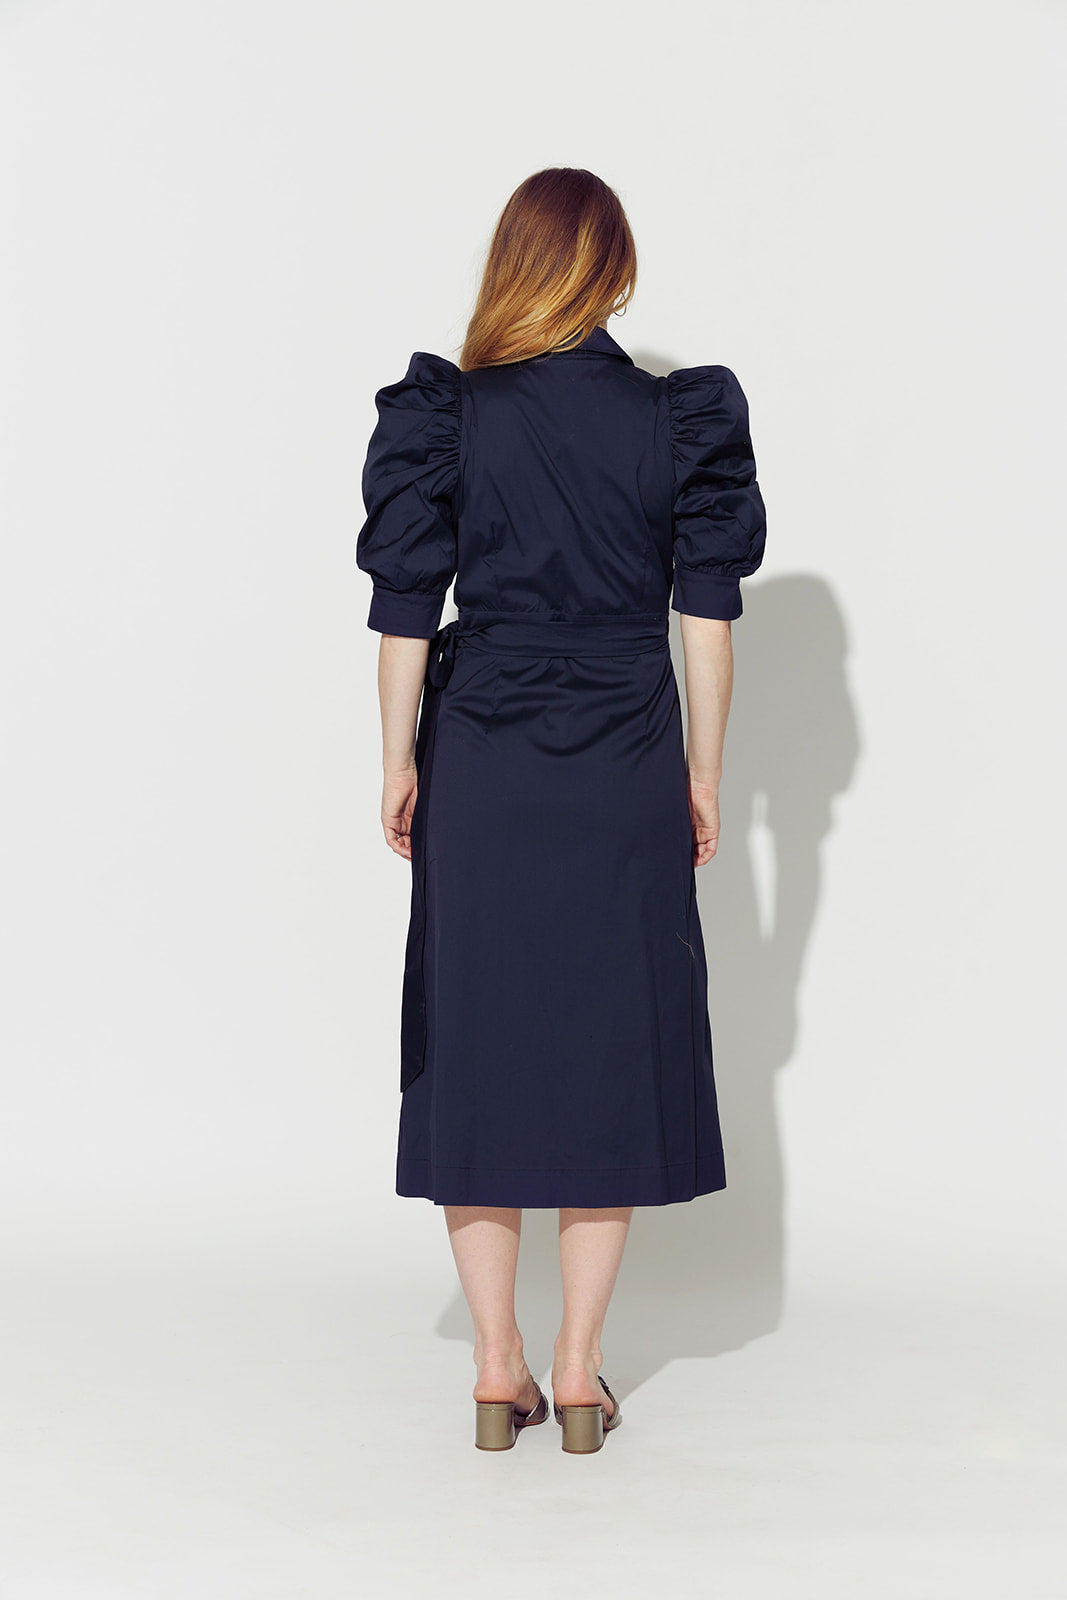 Sloane Maxi Dress - Long Sleeve Wrap Dress in Navy